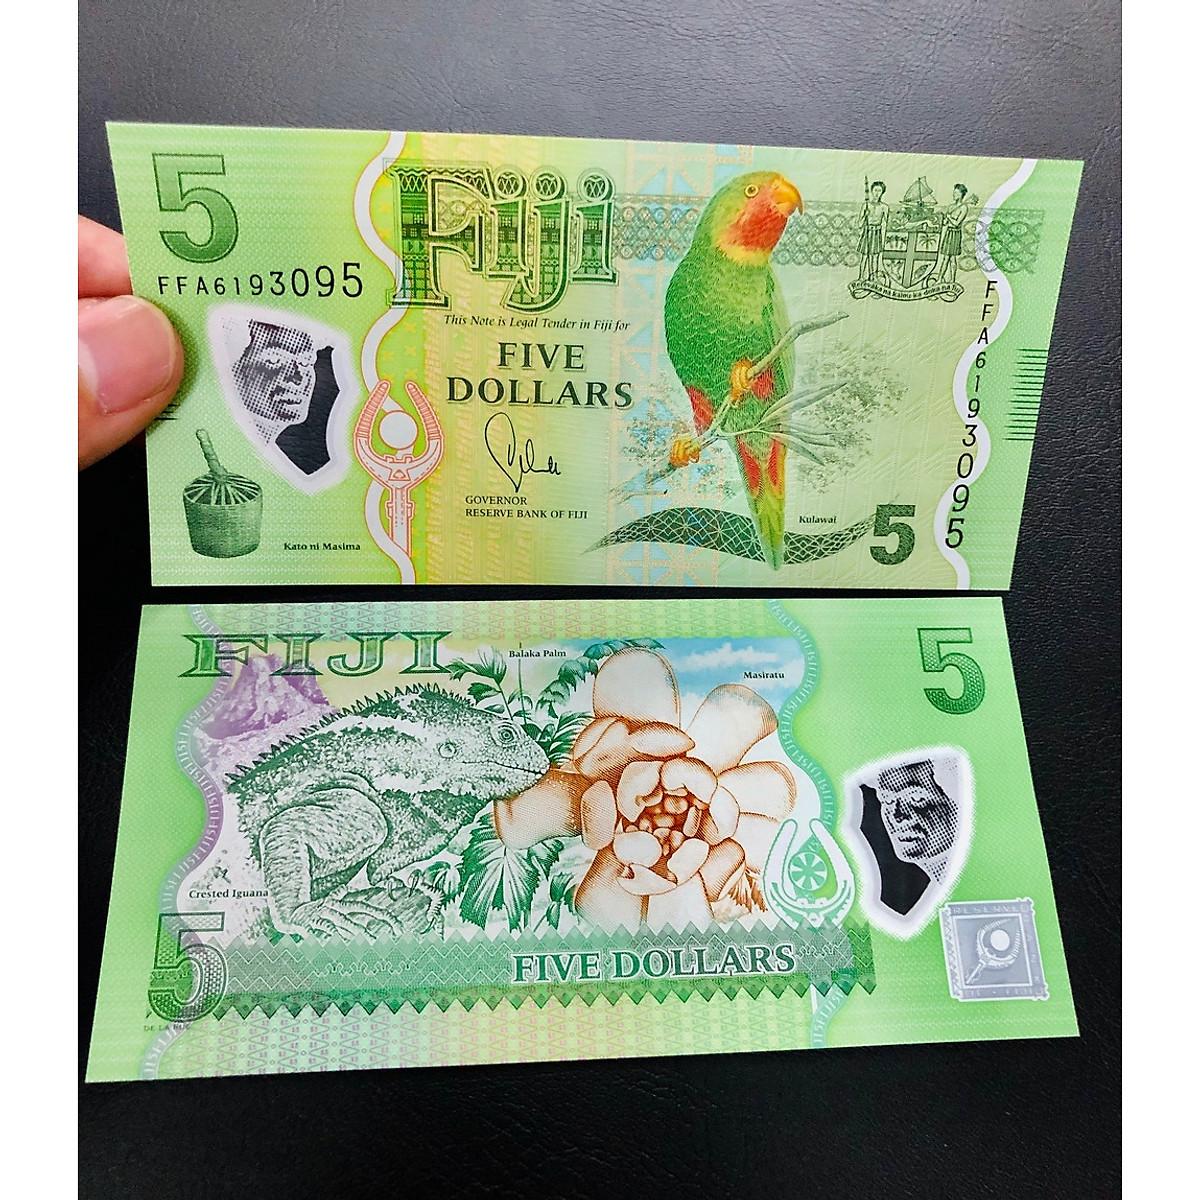 [TIỀN ĐẸP] Tờ 5 Dollar của quốc đảo Fiji ngày xưa, hình ảnh chú chim sặc sỡ